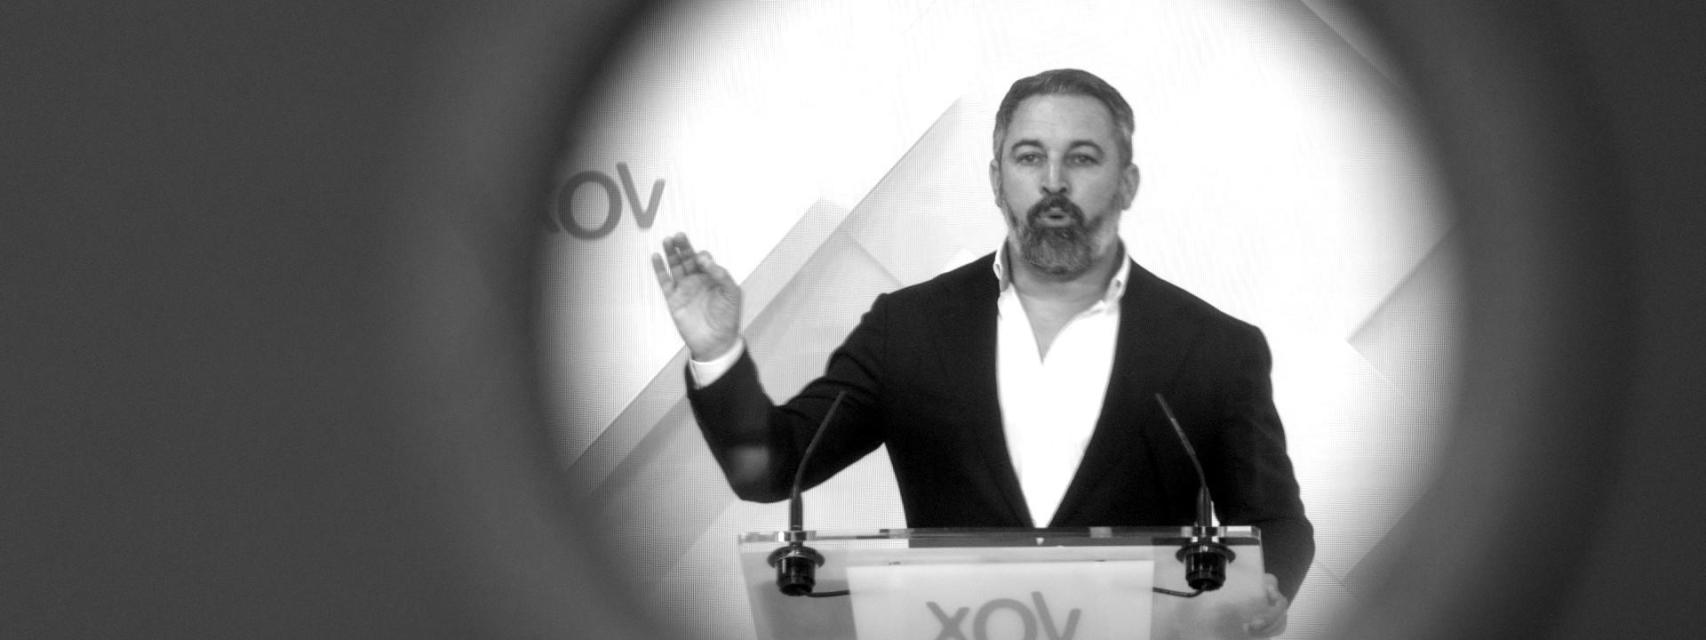 El líder de Vox, Santiago Abascal, durante una rueda de prensa posterior al Comité de Acción Política del partido, en la sede de Vox.